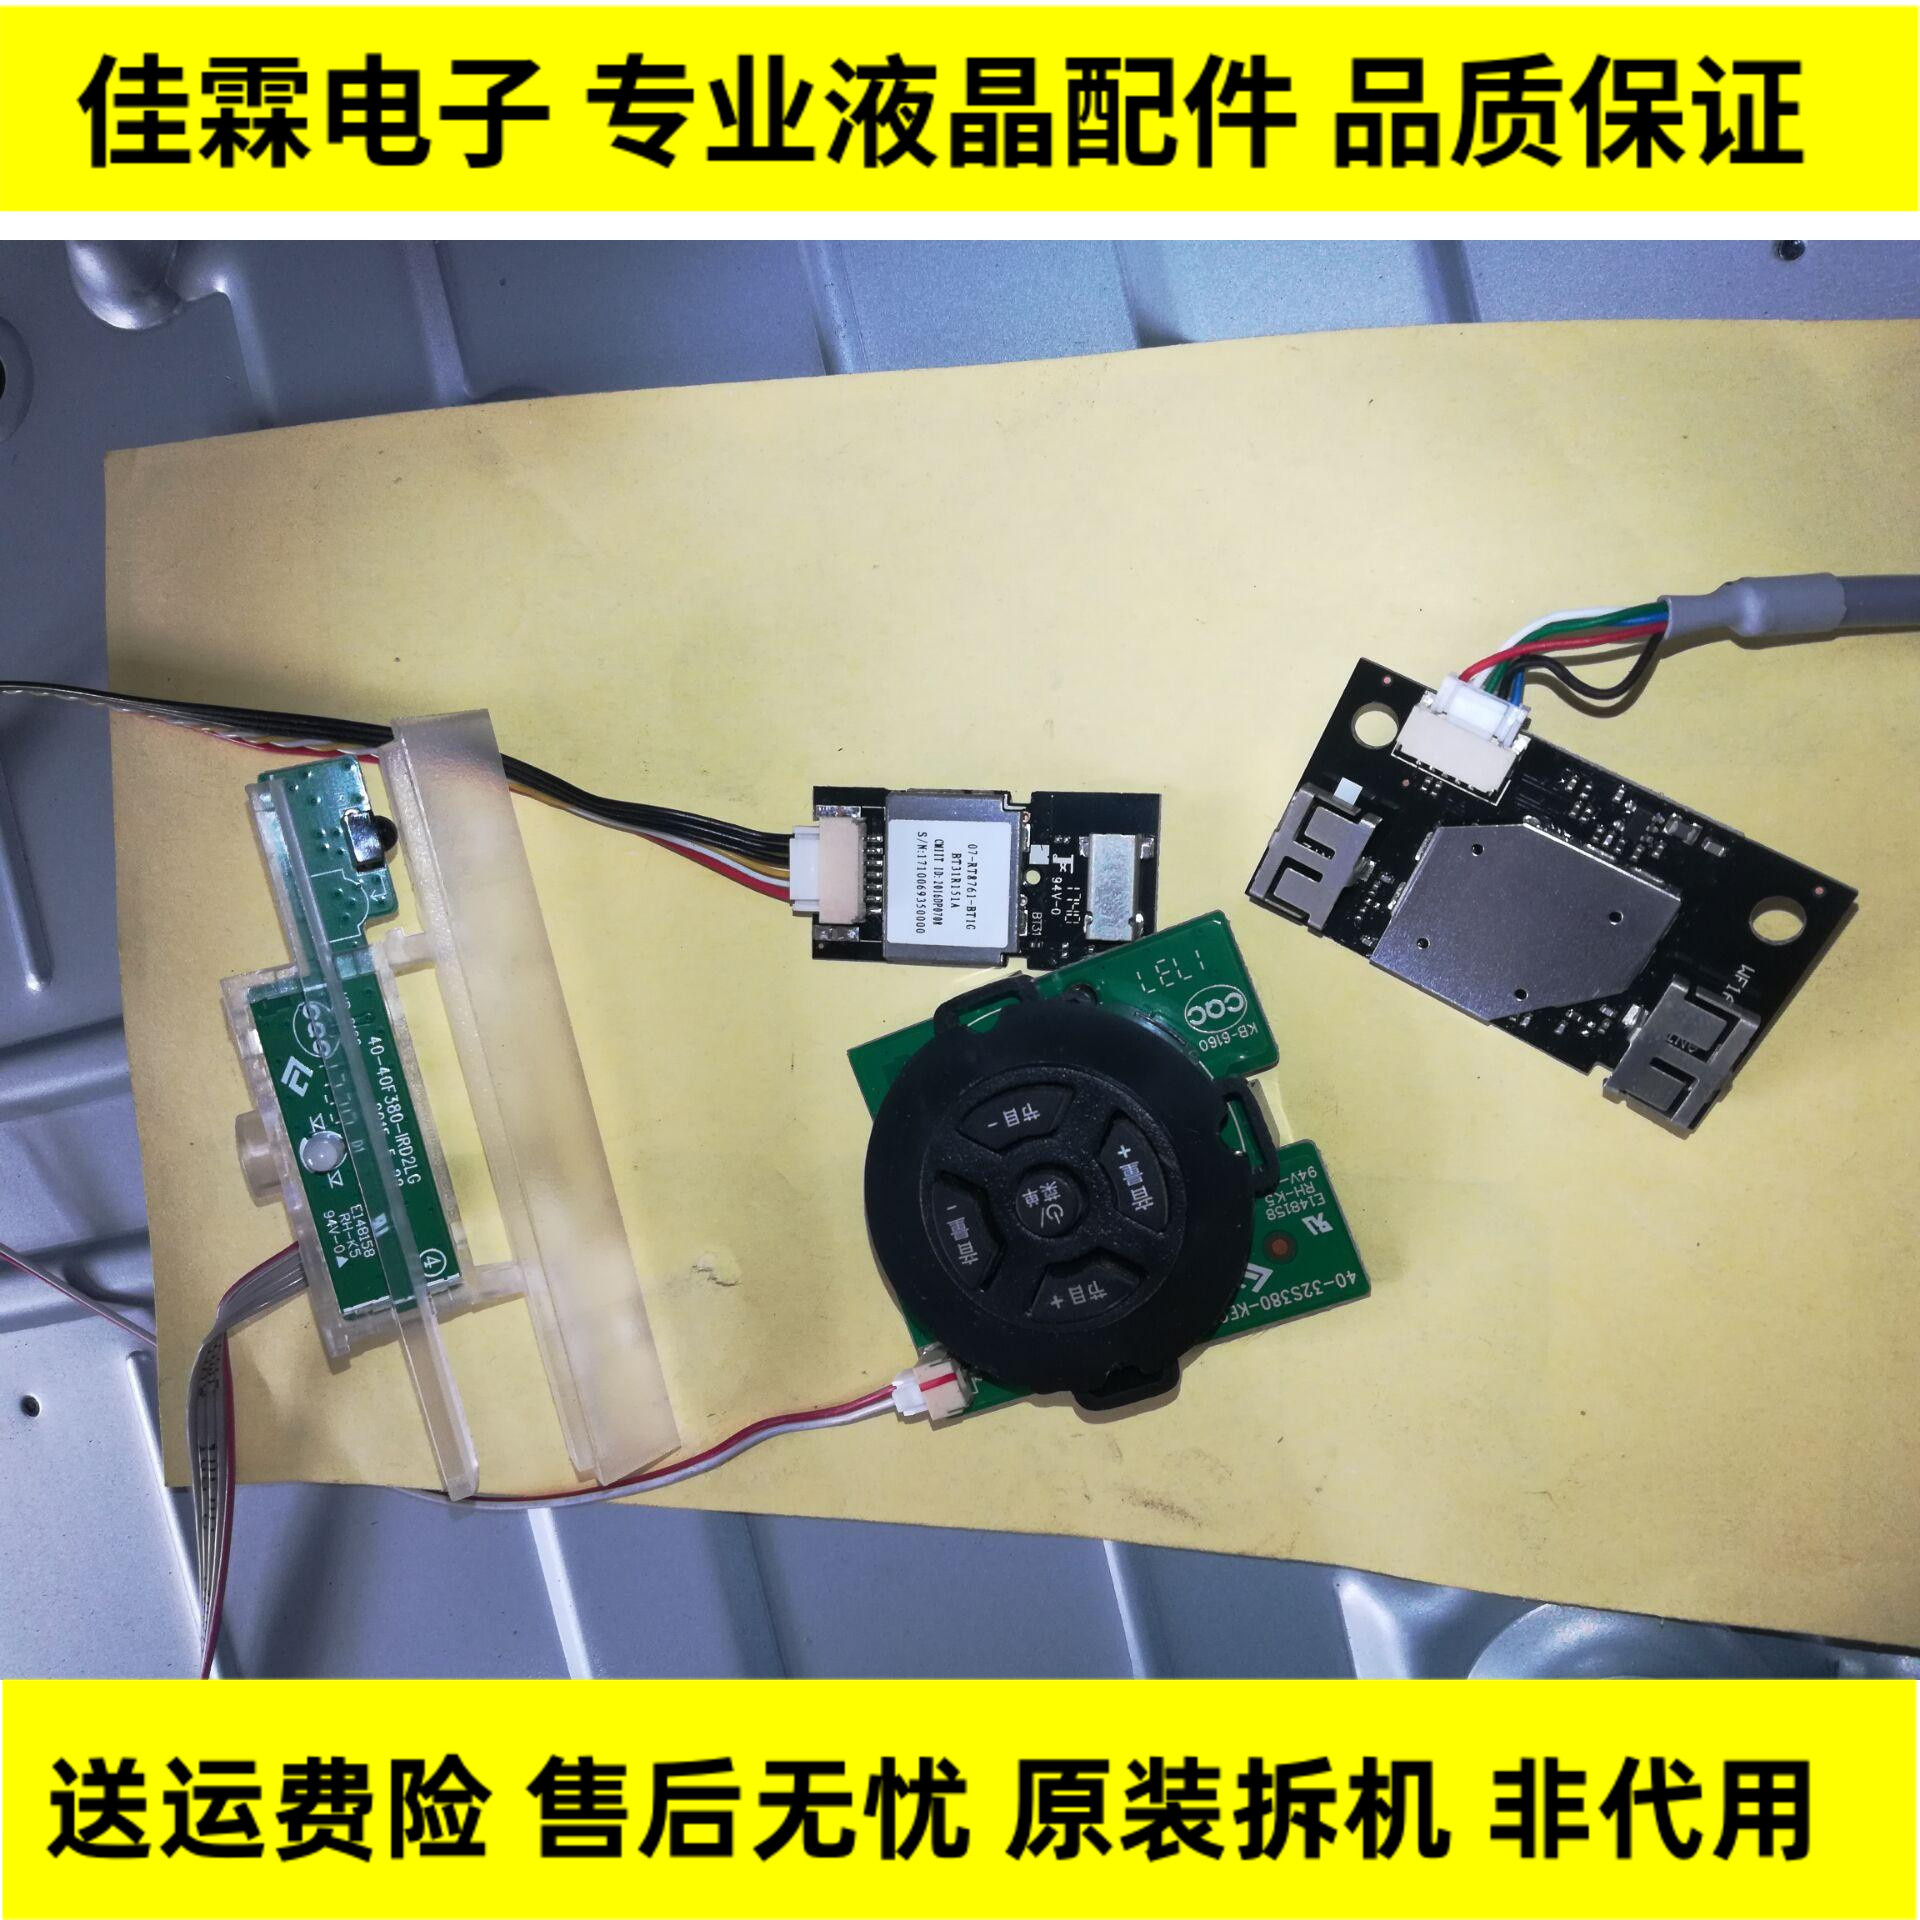 原装东芝 55U668EBC 遥控接收板 按键 无线网卡 一套价现货